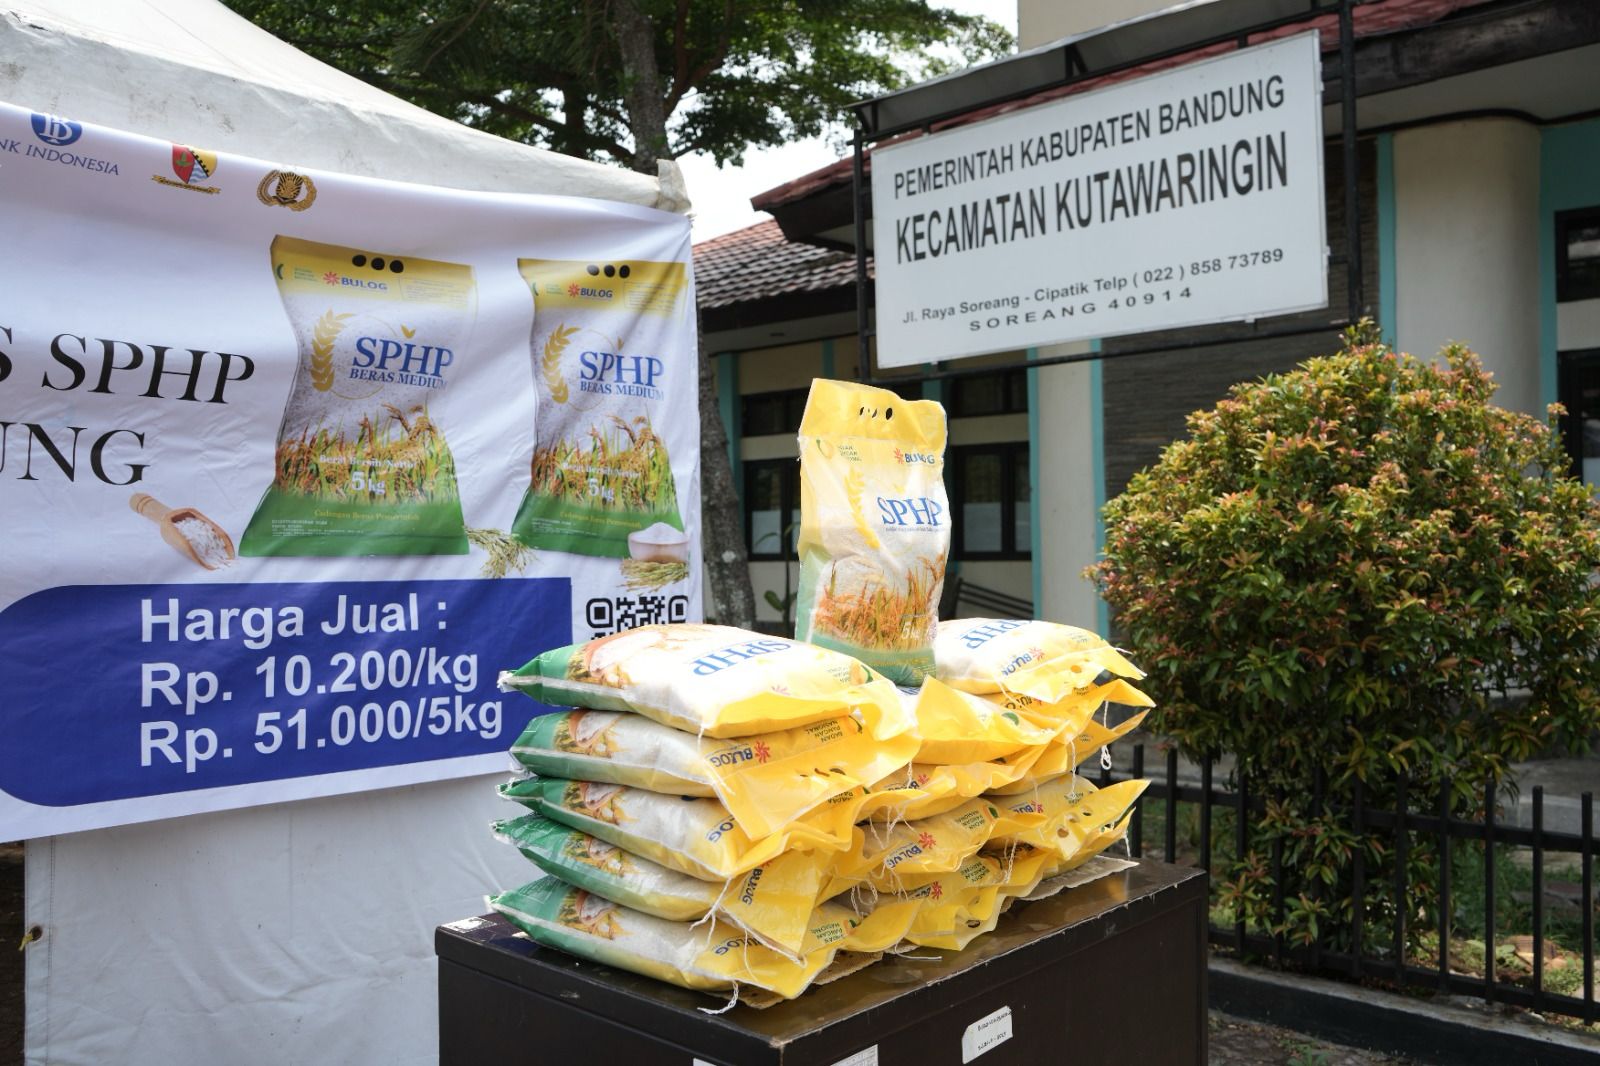 Operasi Pasar Beras Murah yang diadakan Pemkab Bandung di Kantor Kecamatan Kutawaringin, Senin (23/10).